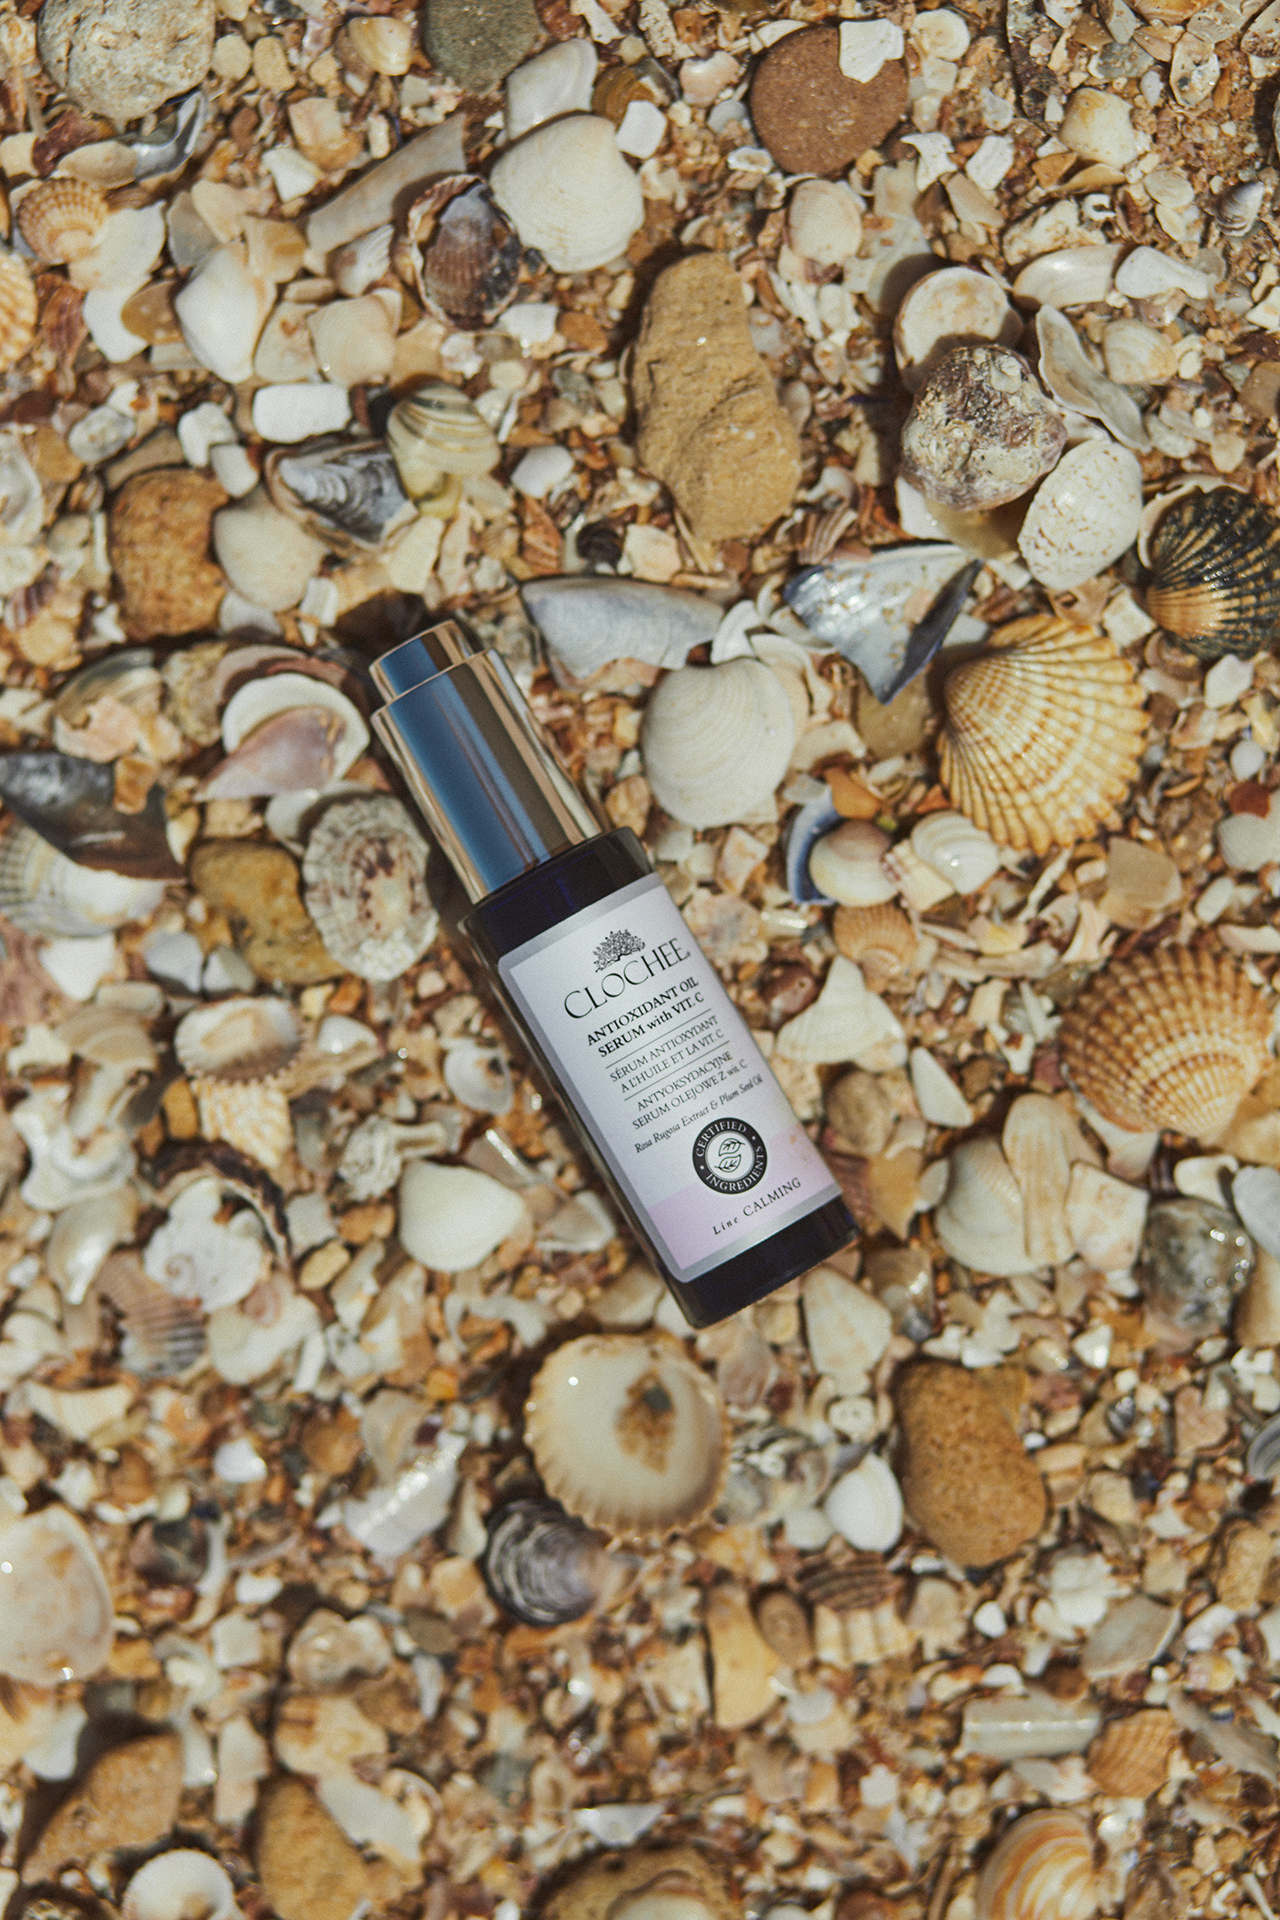 Produkt Clochcee Cosmetics na plaży z muszlami i kamieniami